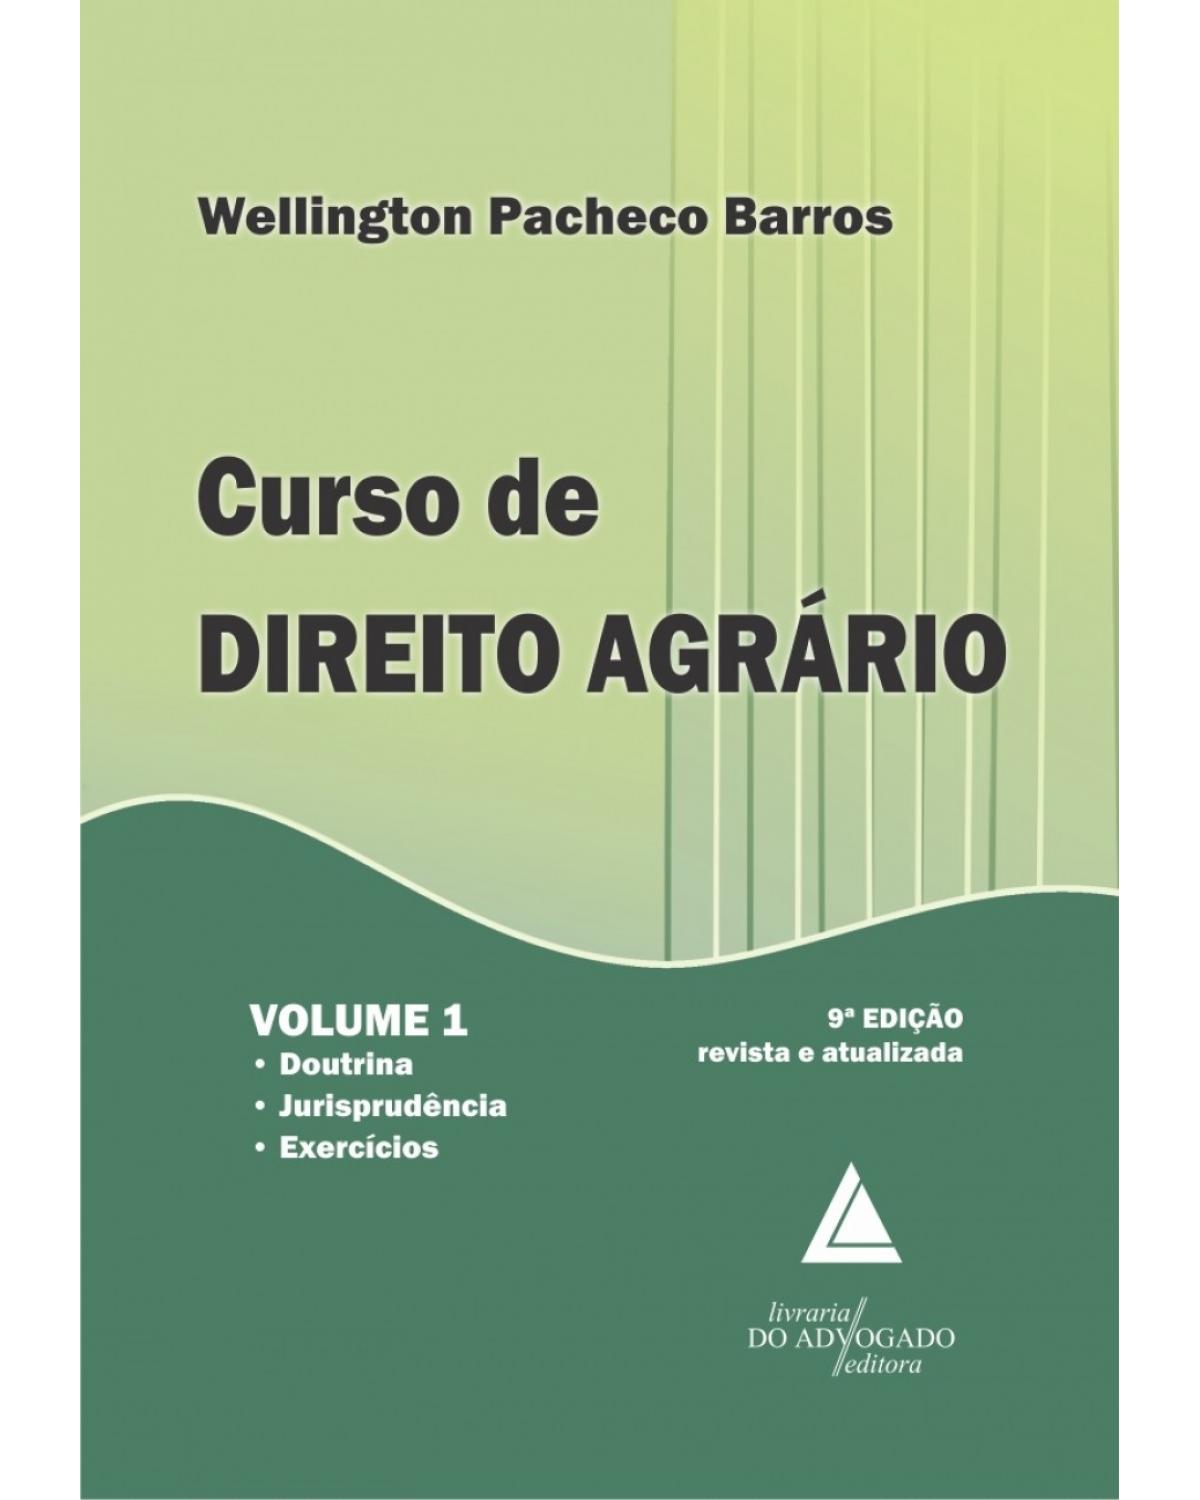 Curso de direito agrário - Volume 1: Doutrina, jurisprudência e exercícios - 9ª Edição | 2015